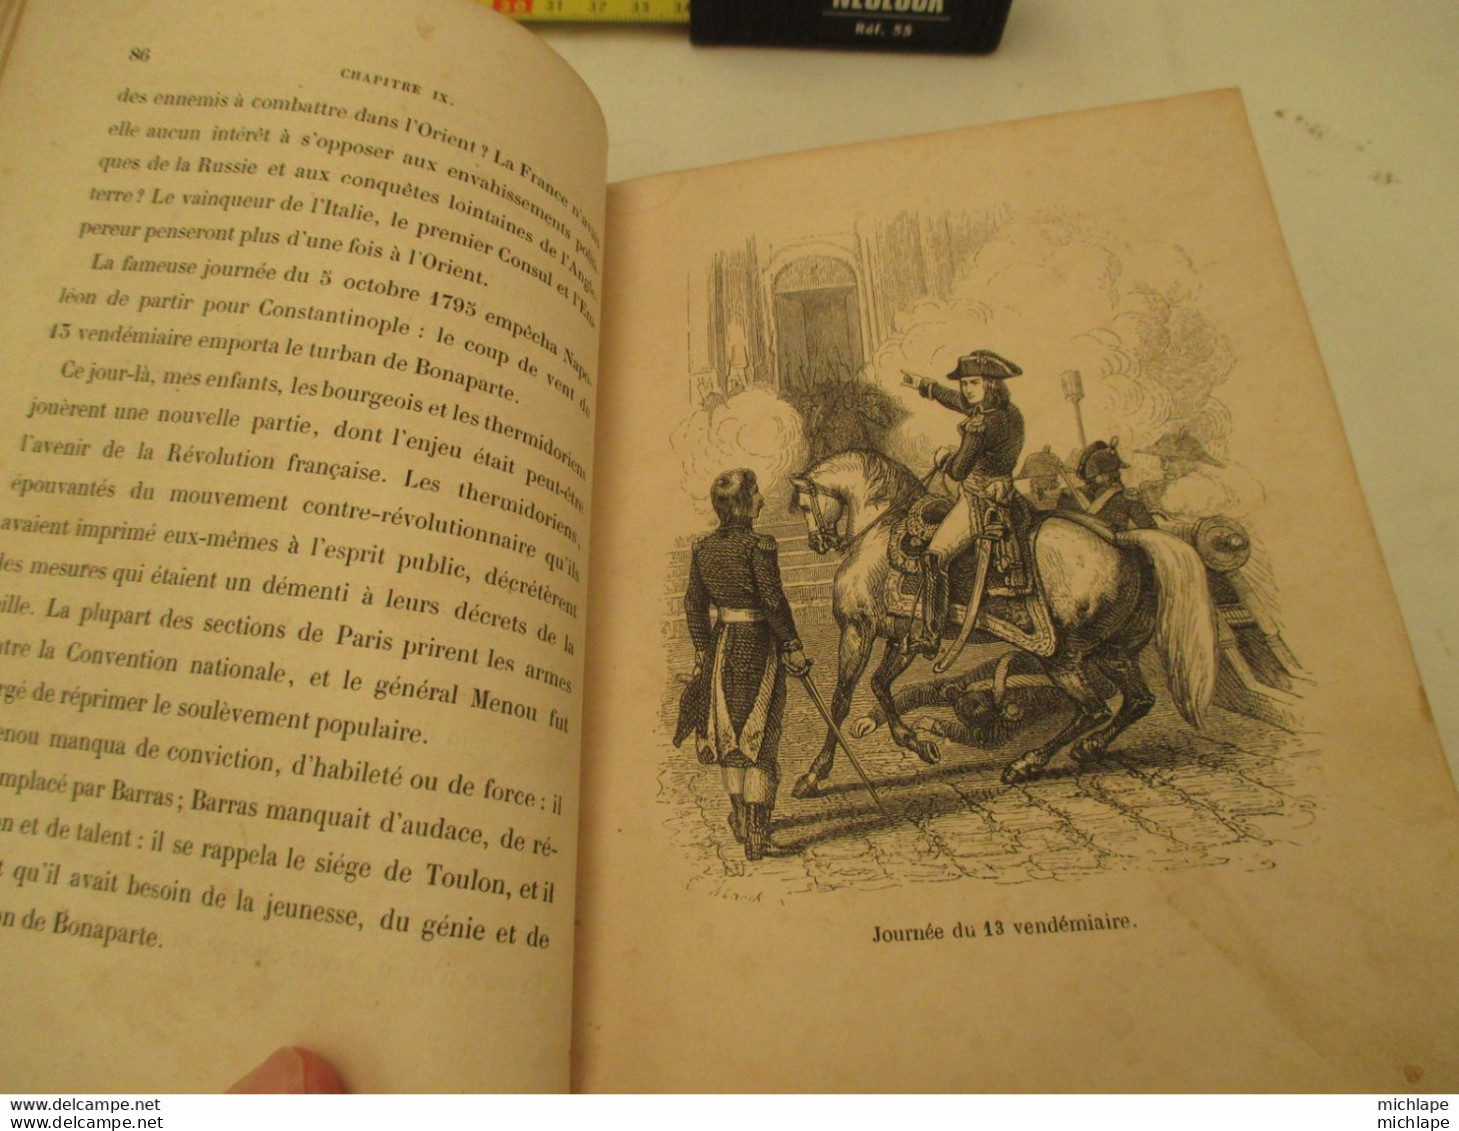 livre - NAPOLEON - de louis lurine - 1844 - nombreuses illustrations - 314 pages - format 13X18 bon état général